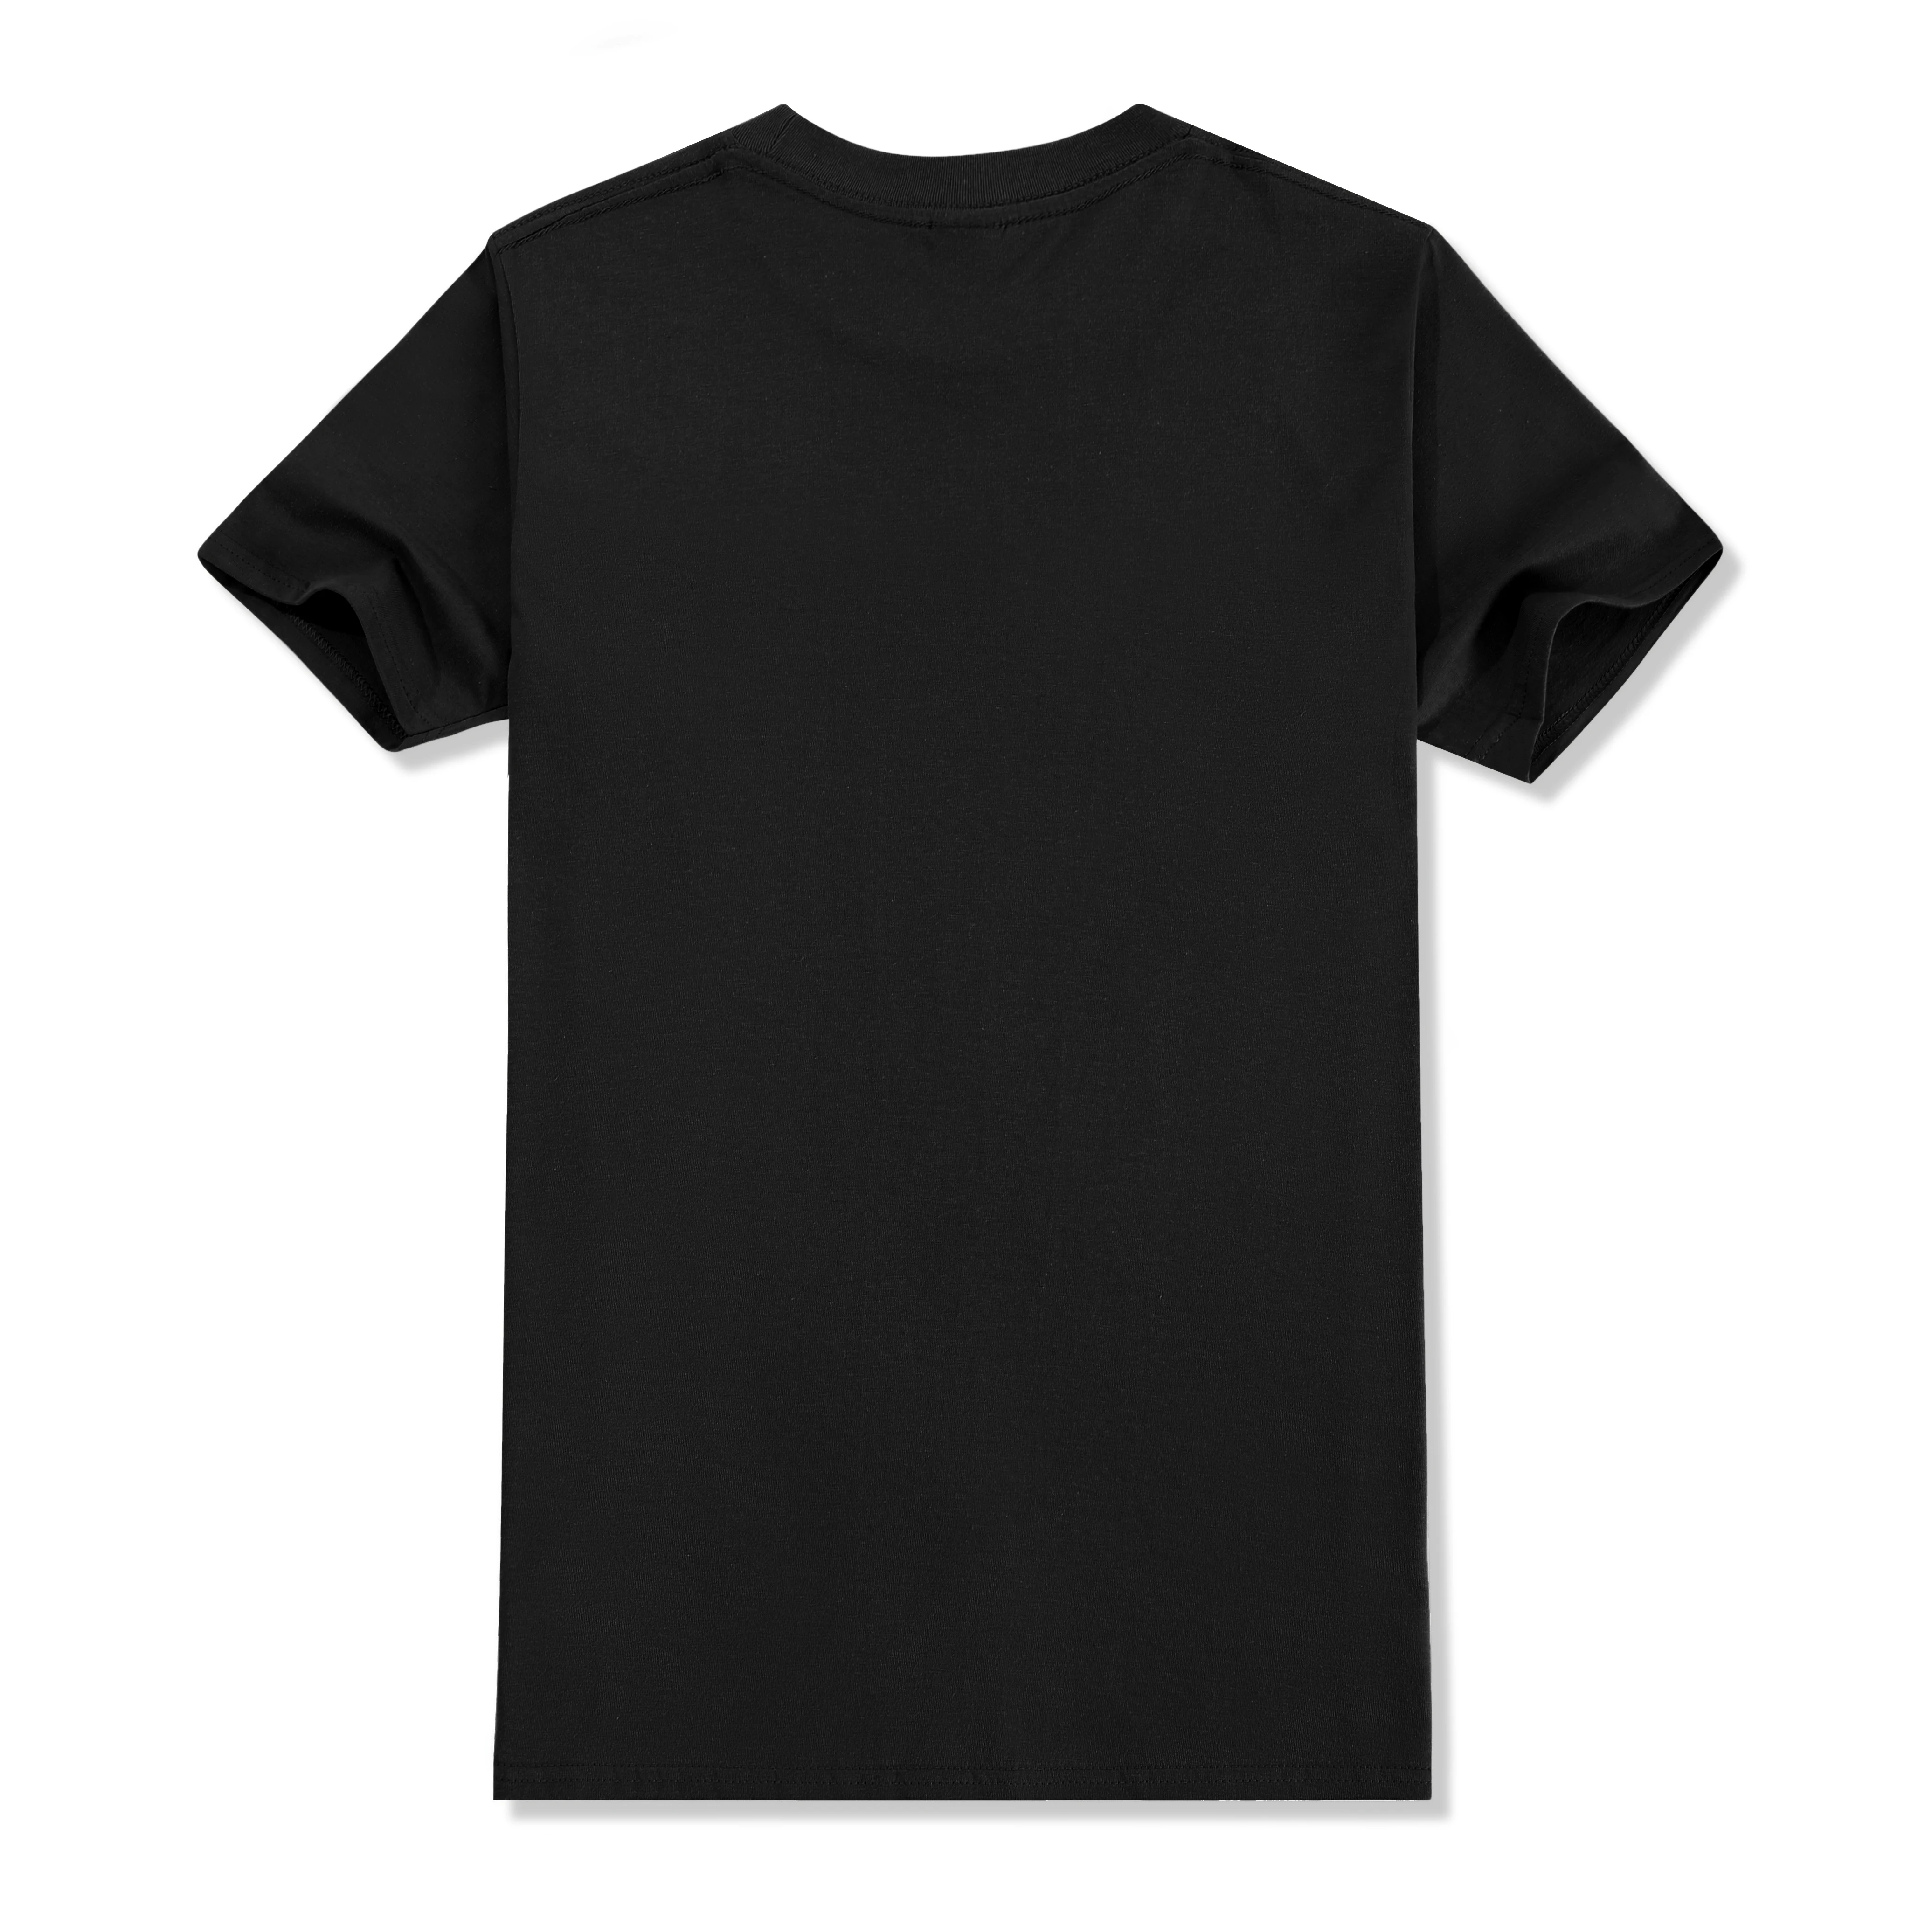 Niestandardowa koszulka z przodu z tyłu profesjonalna z własnym Logo ze zdjęciem tekstowym męskim spersonalizowanym prezentem Premium t-shirt rozmiar UE 100% bawełna